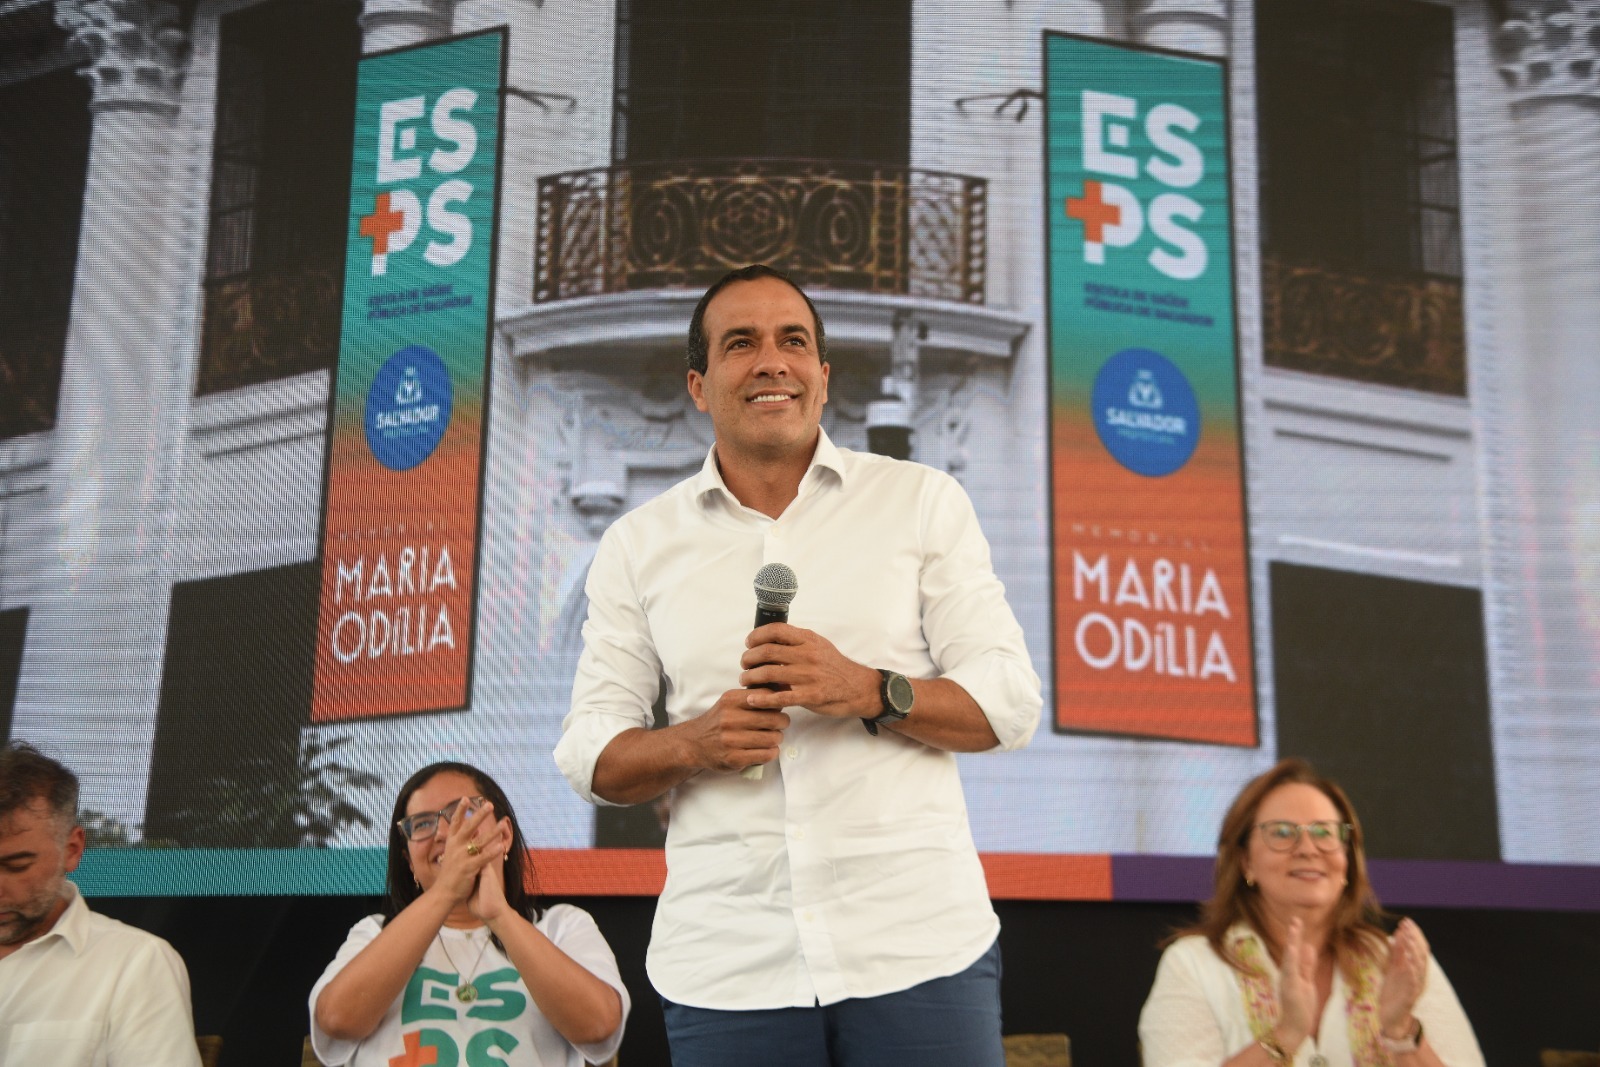 Bruno Reis inaugura Escola de Saúde Pública e Memorial Maria Odília no Comércio